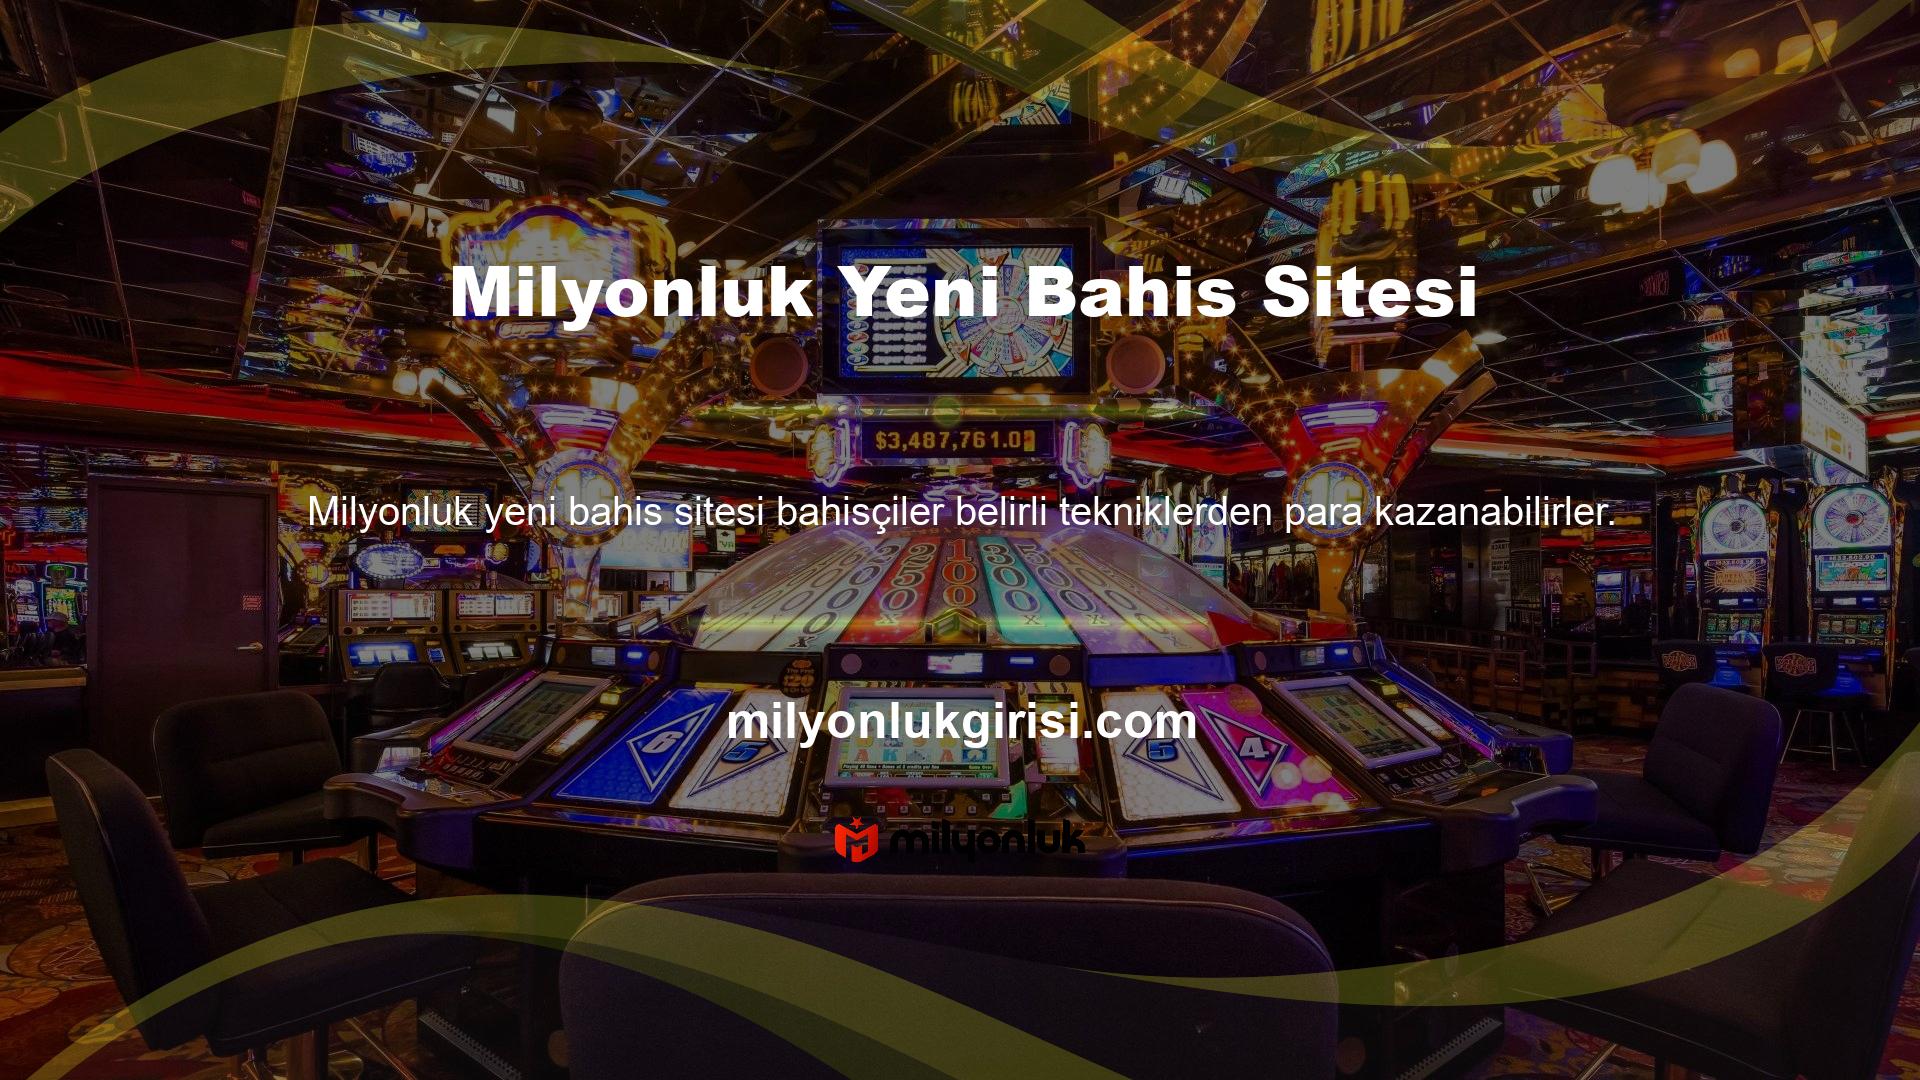 Bahis sitesinin yeni bonusu ile yasa dışı casino oynayanlar daha fazla bahis oynayabilir ve sitede daha fazla vakit geçirebilirler